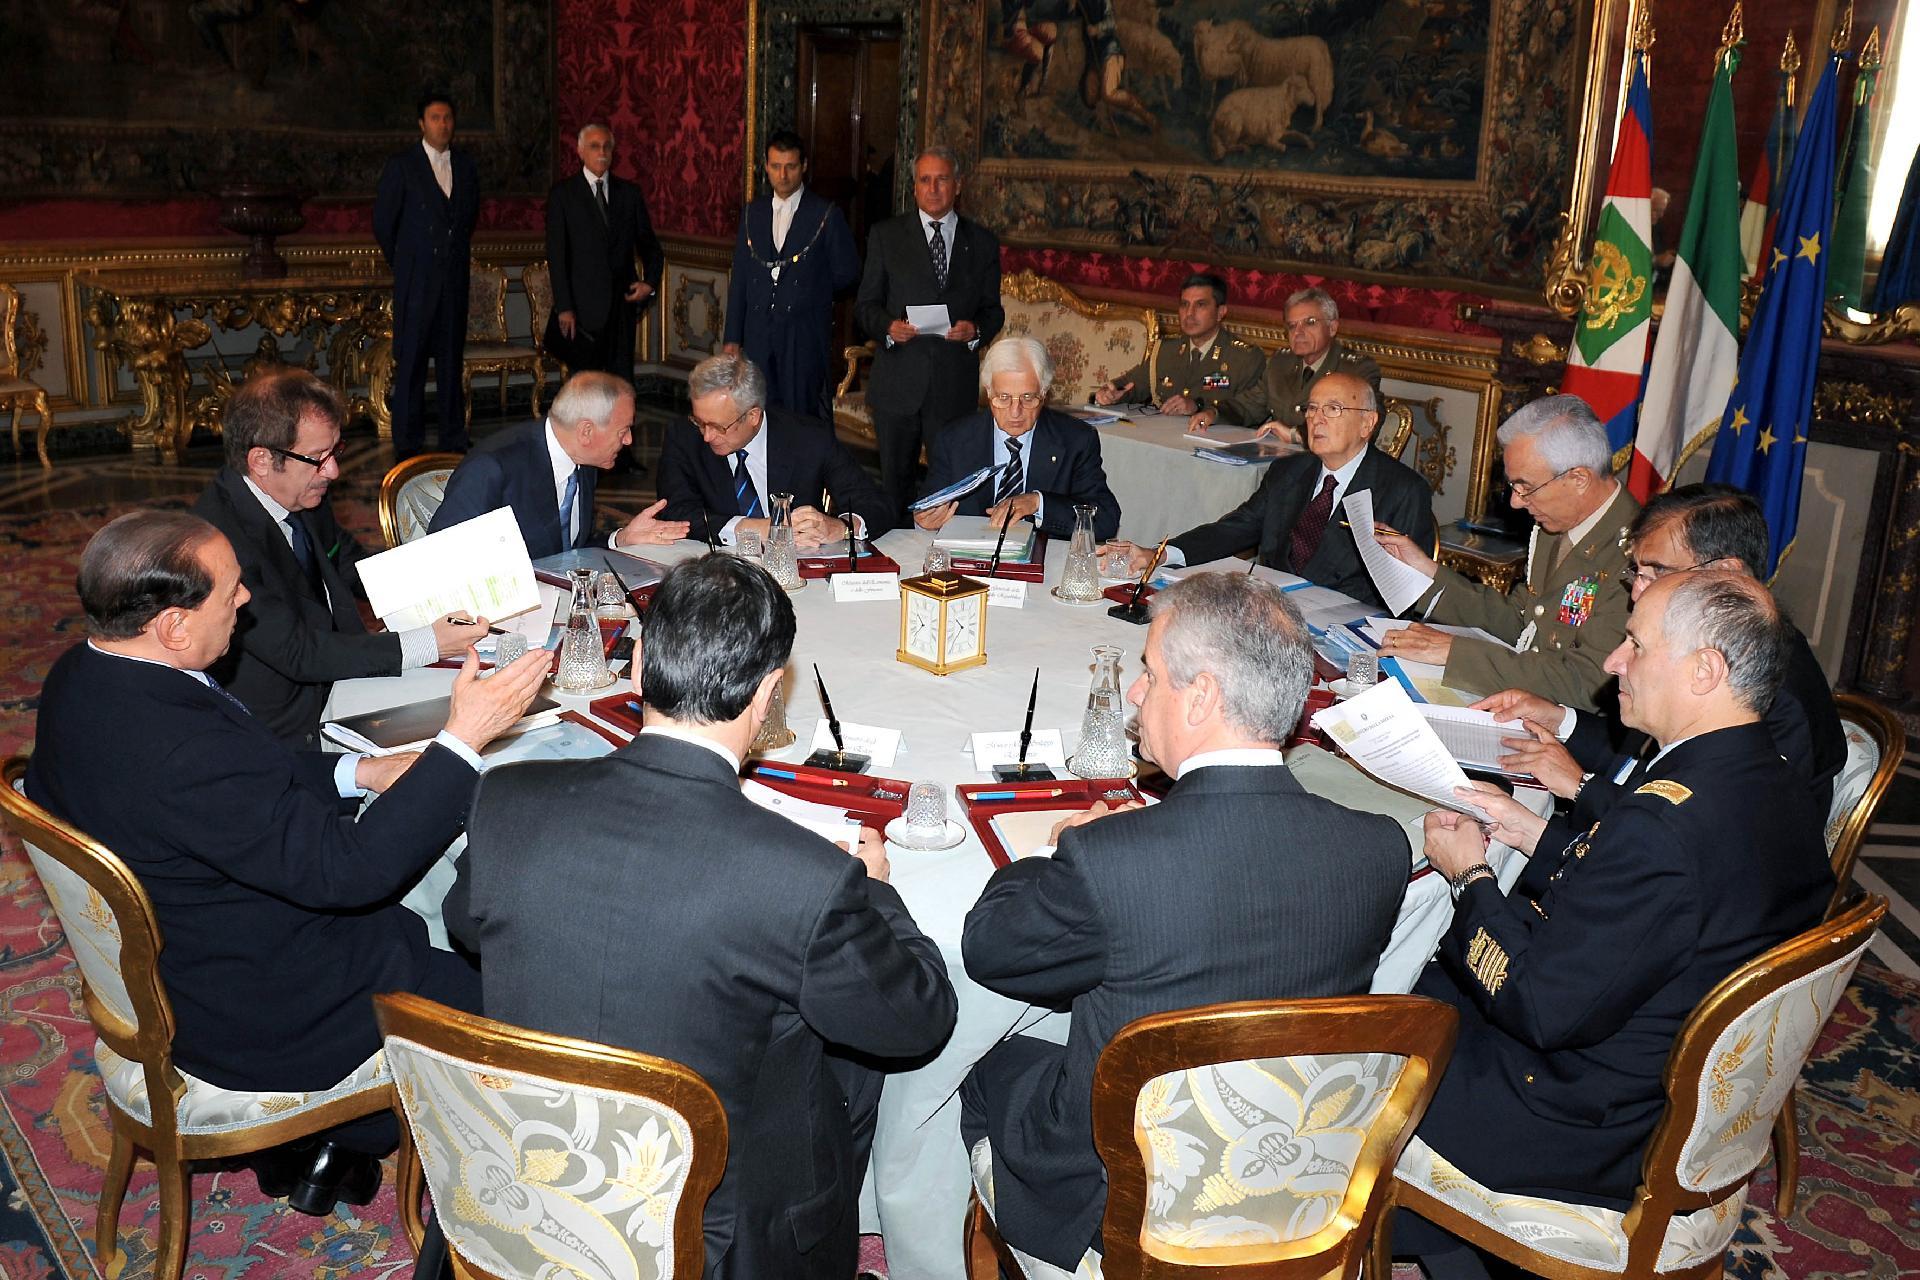 Il Presidente Giorgio Napolitano durante la Riunione del Consiglio supremo di difesa al Quirinale